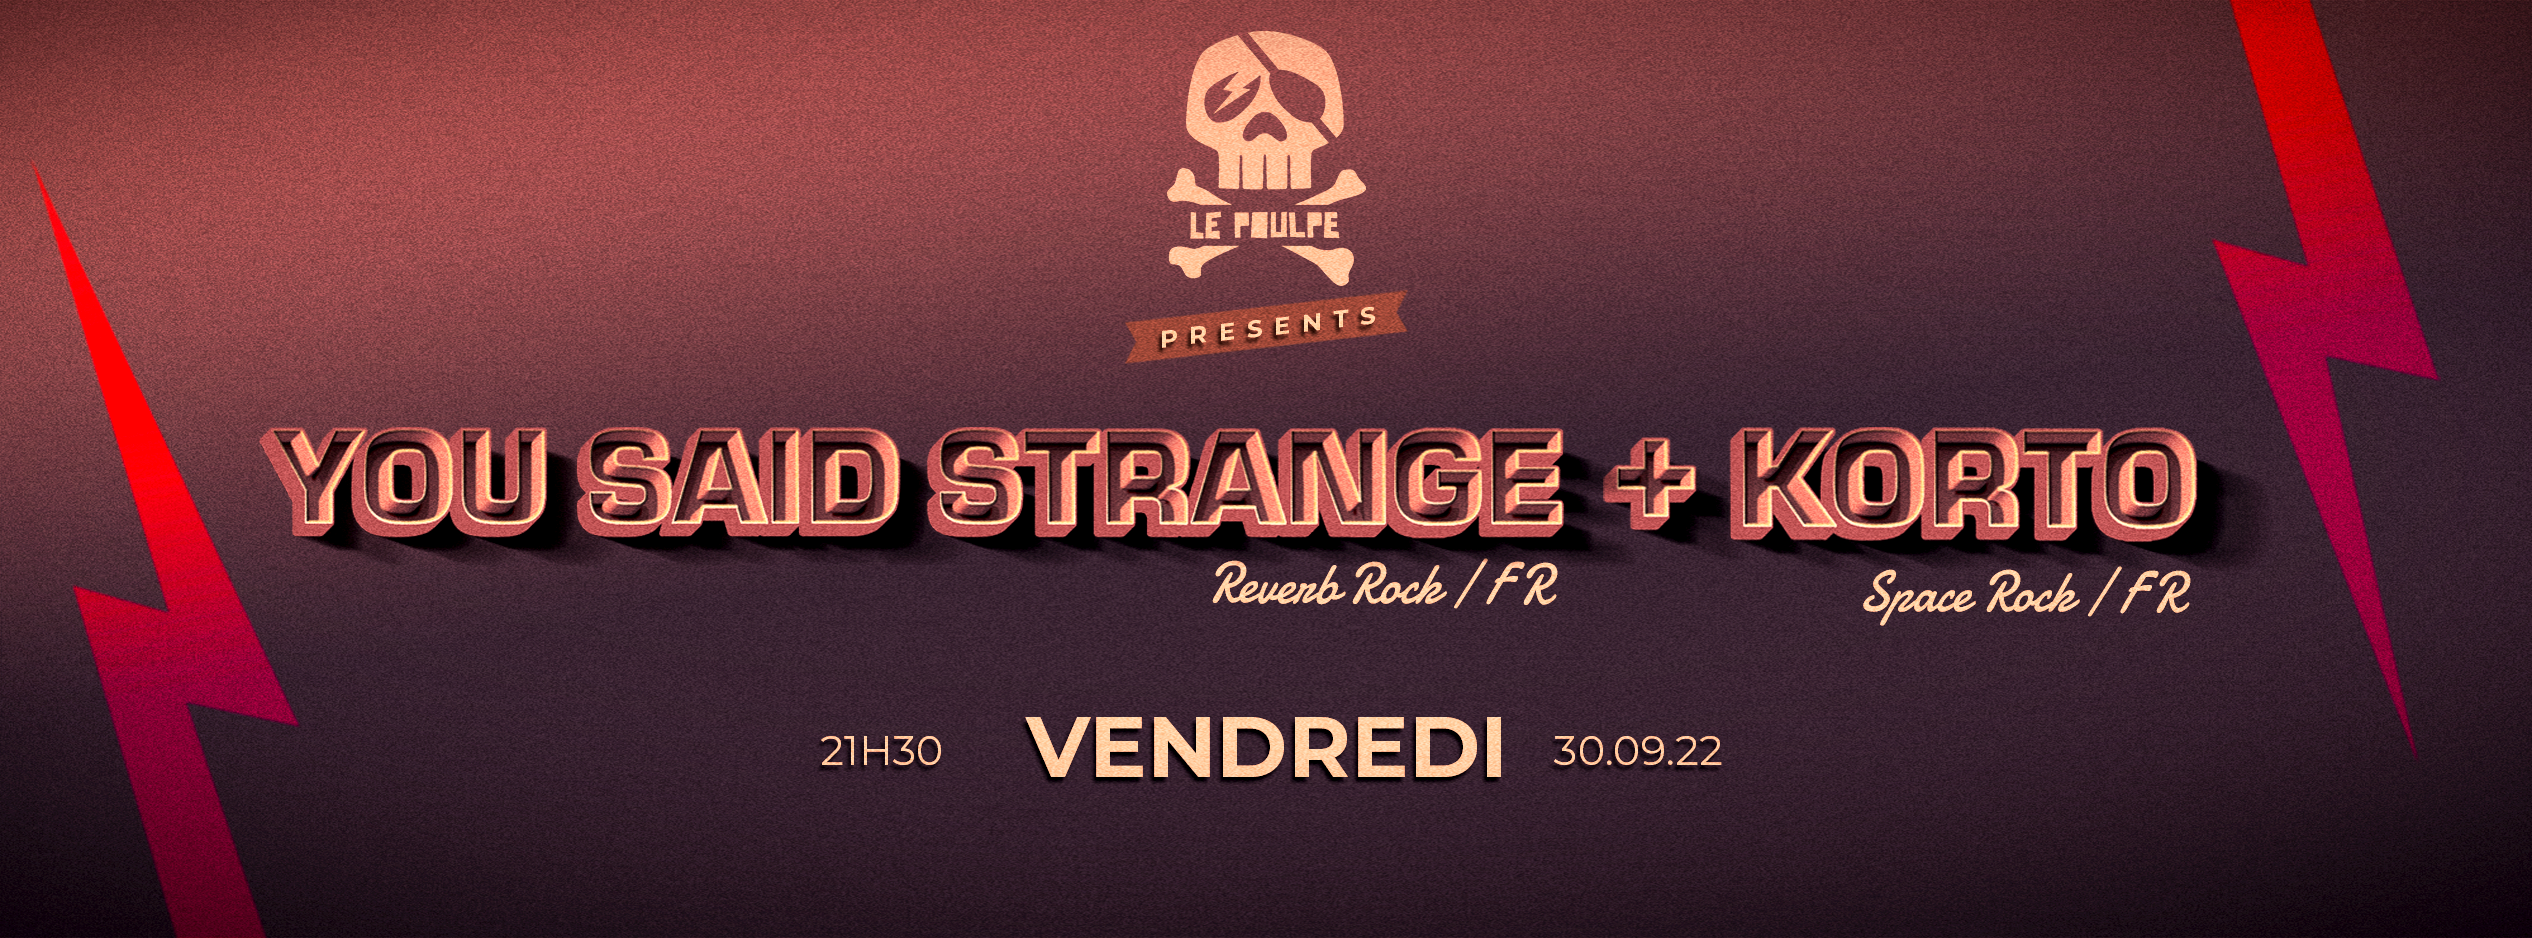 You Said Strange (Reverb Rock) + Korto (Space Rock) @ Le Poulpe